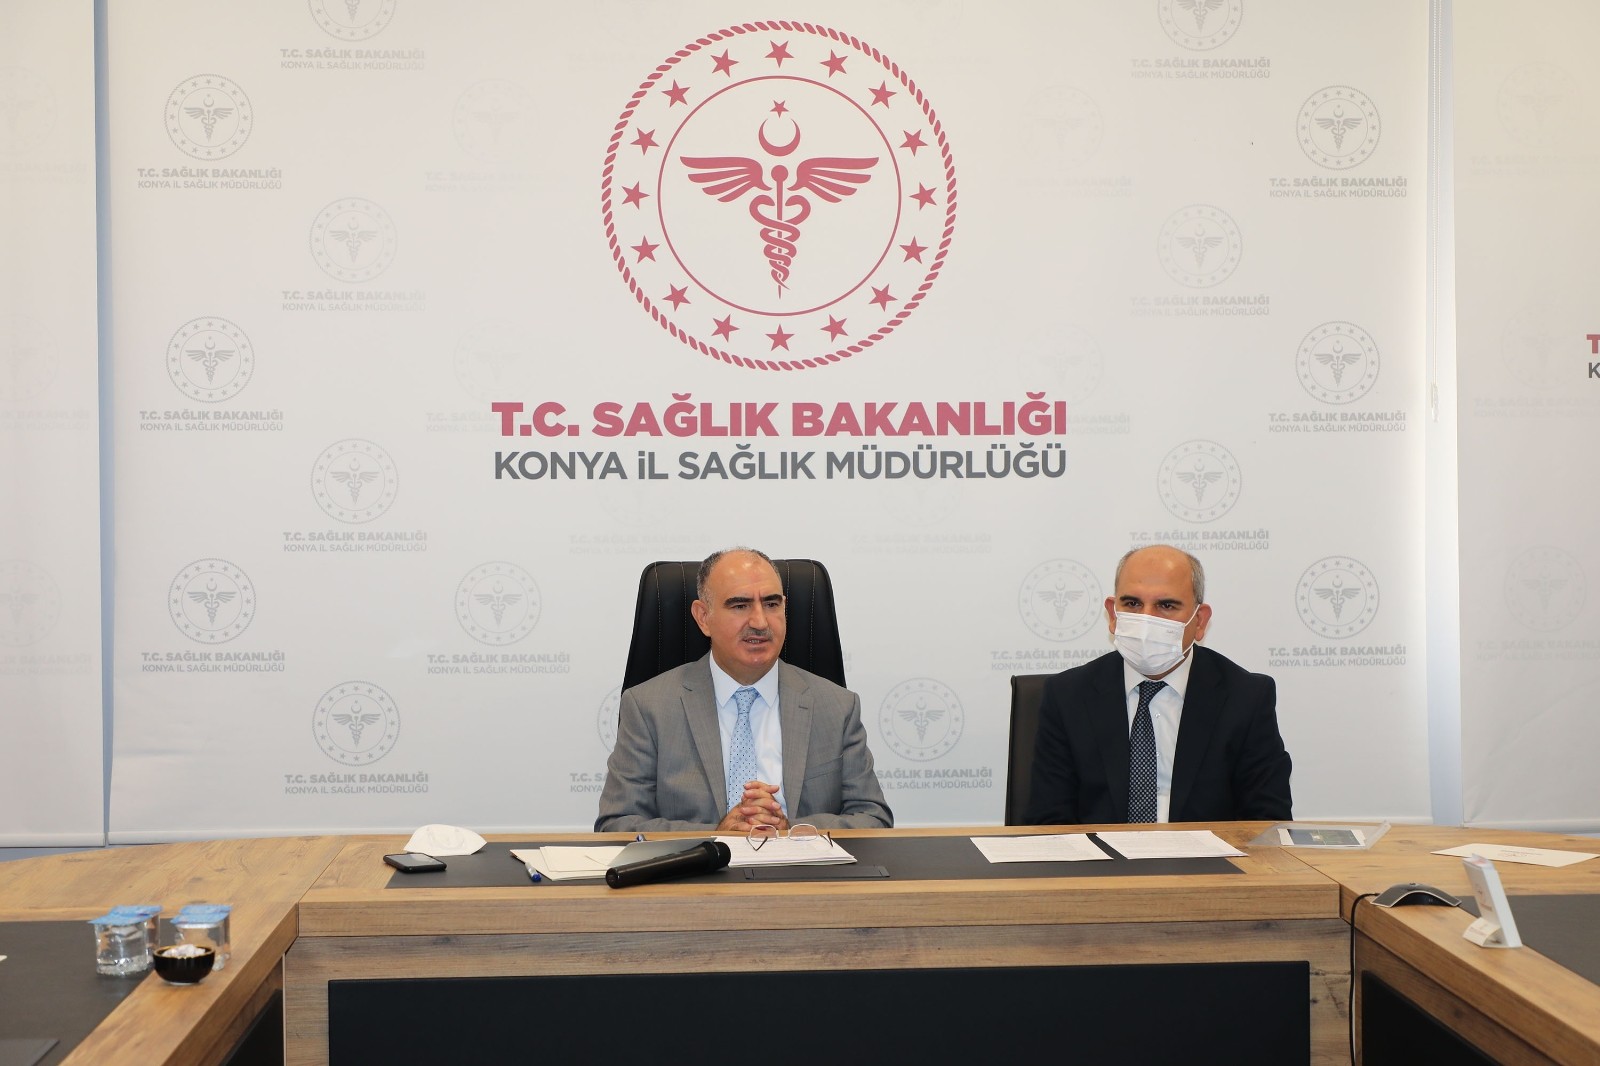 Konya’da 45 yaş altı pozitif vaka oranında artış ve aşı uyarısı #konya